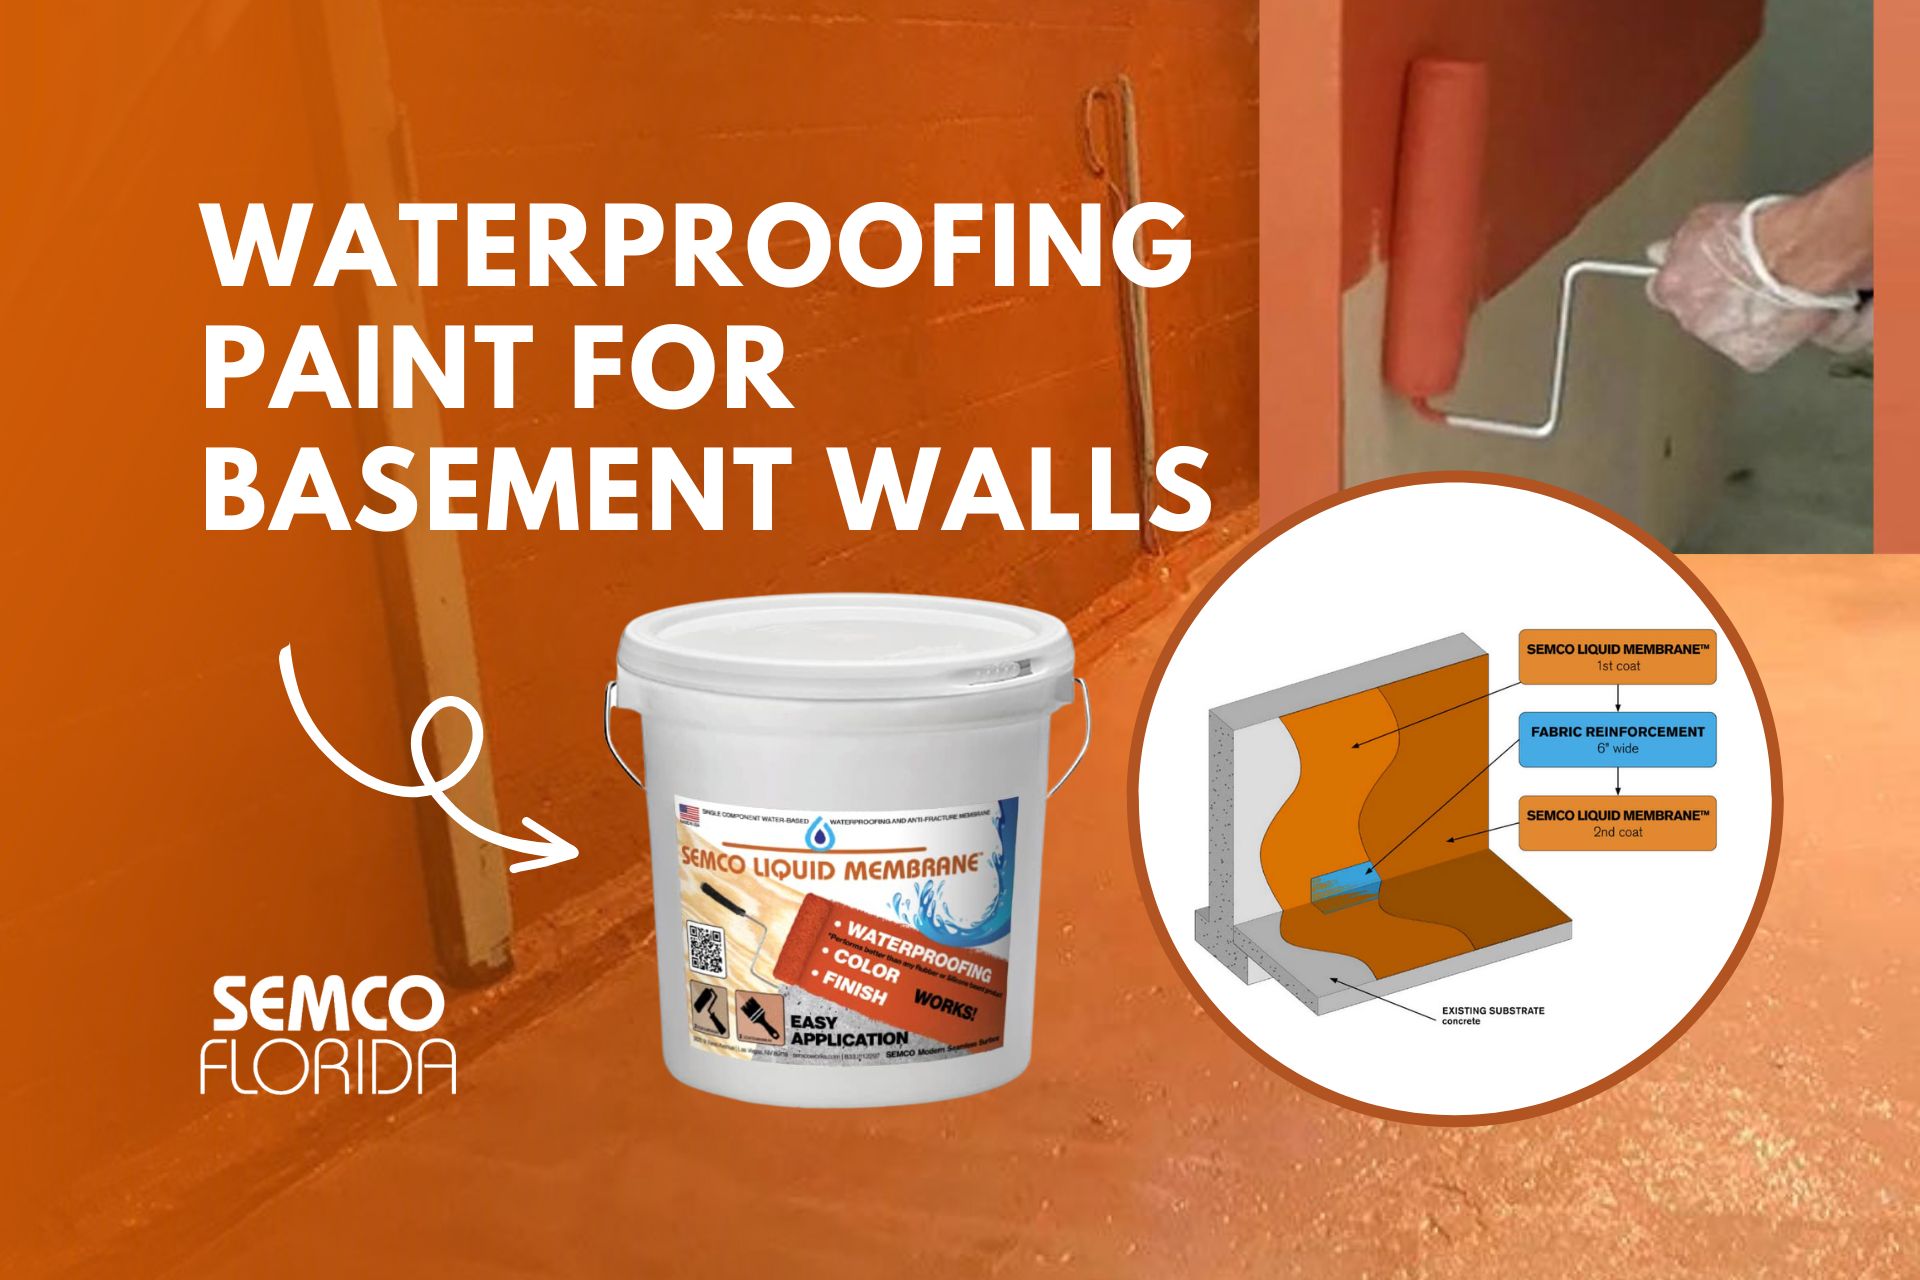 waterproof-paint-for-basement-walls-basement-waterproofing-paint